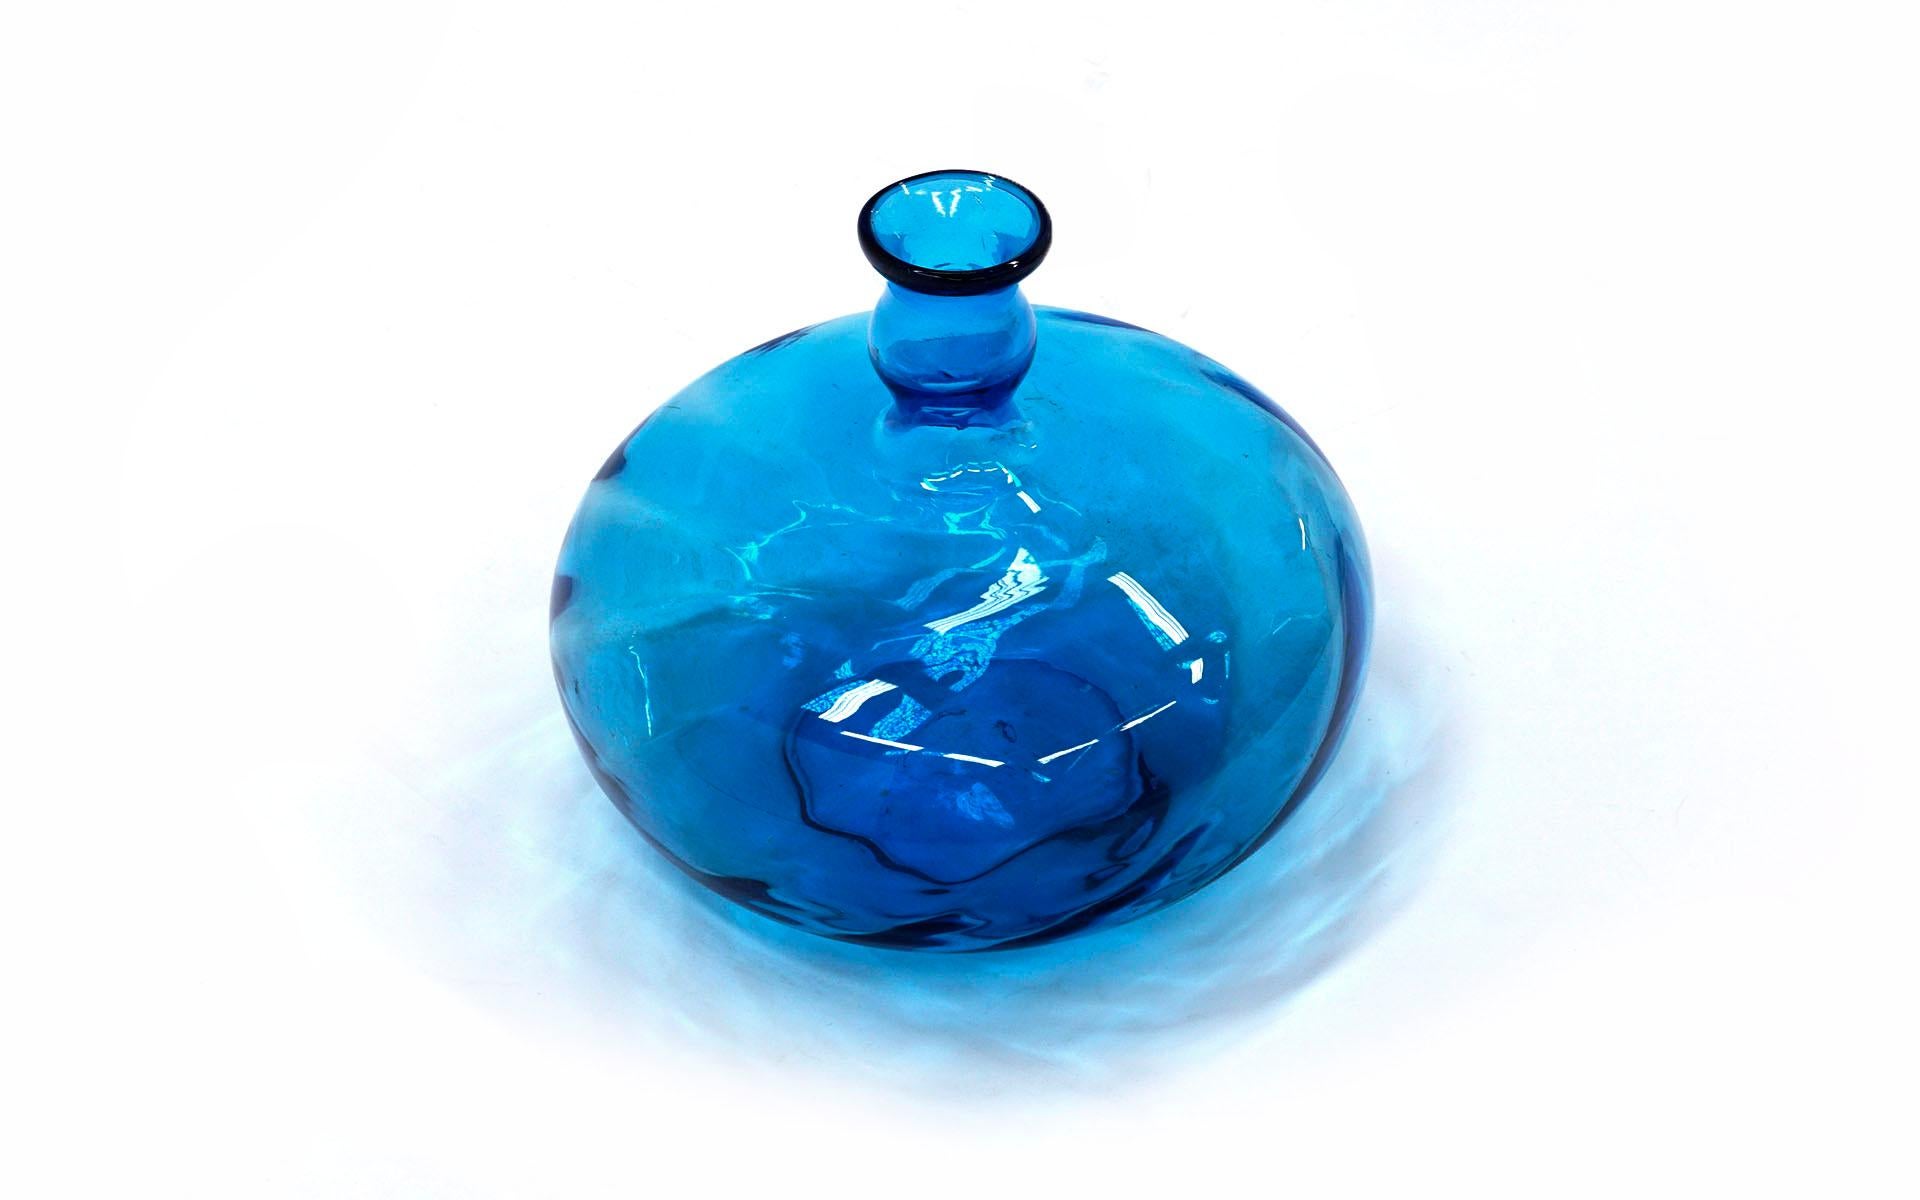 blenko blue glass vase